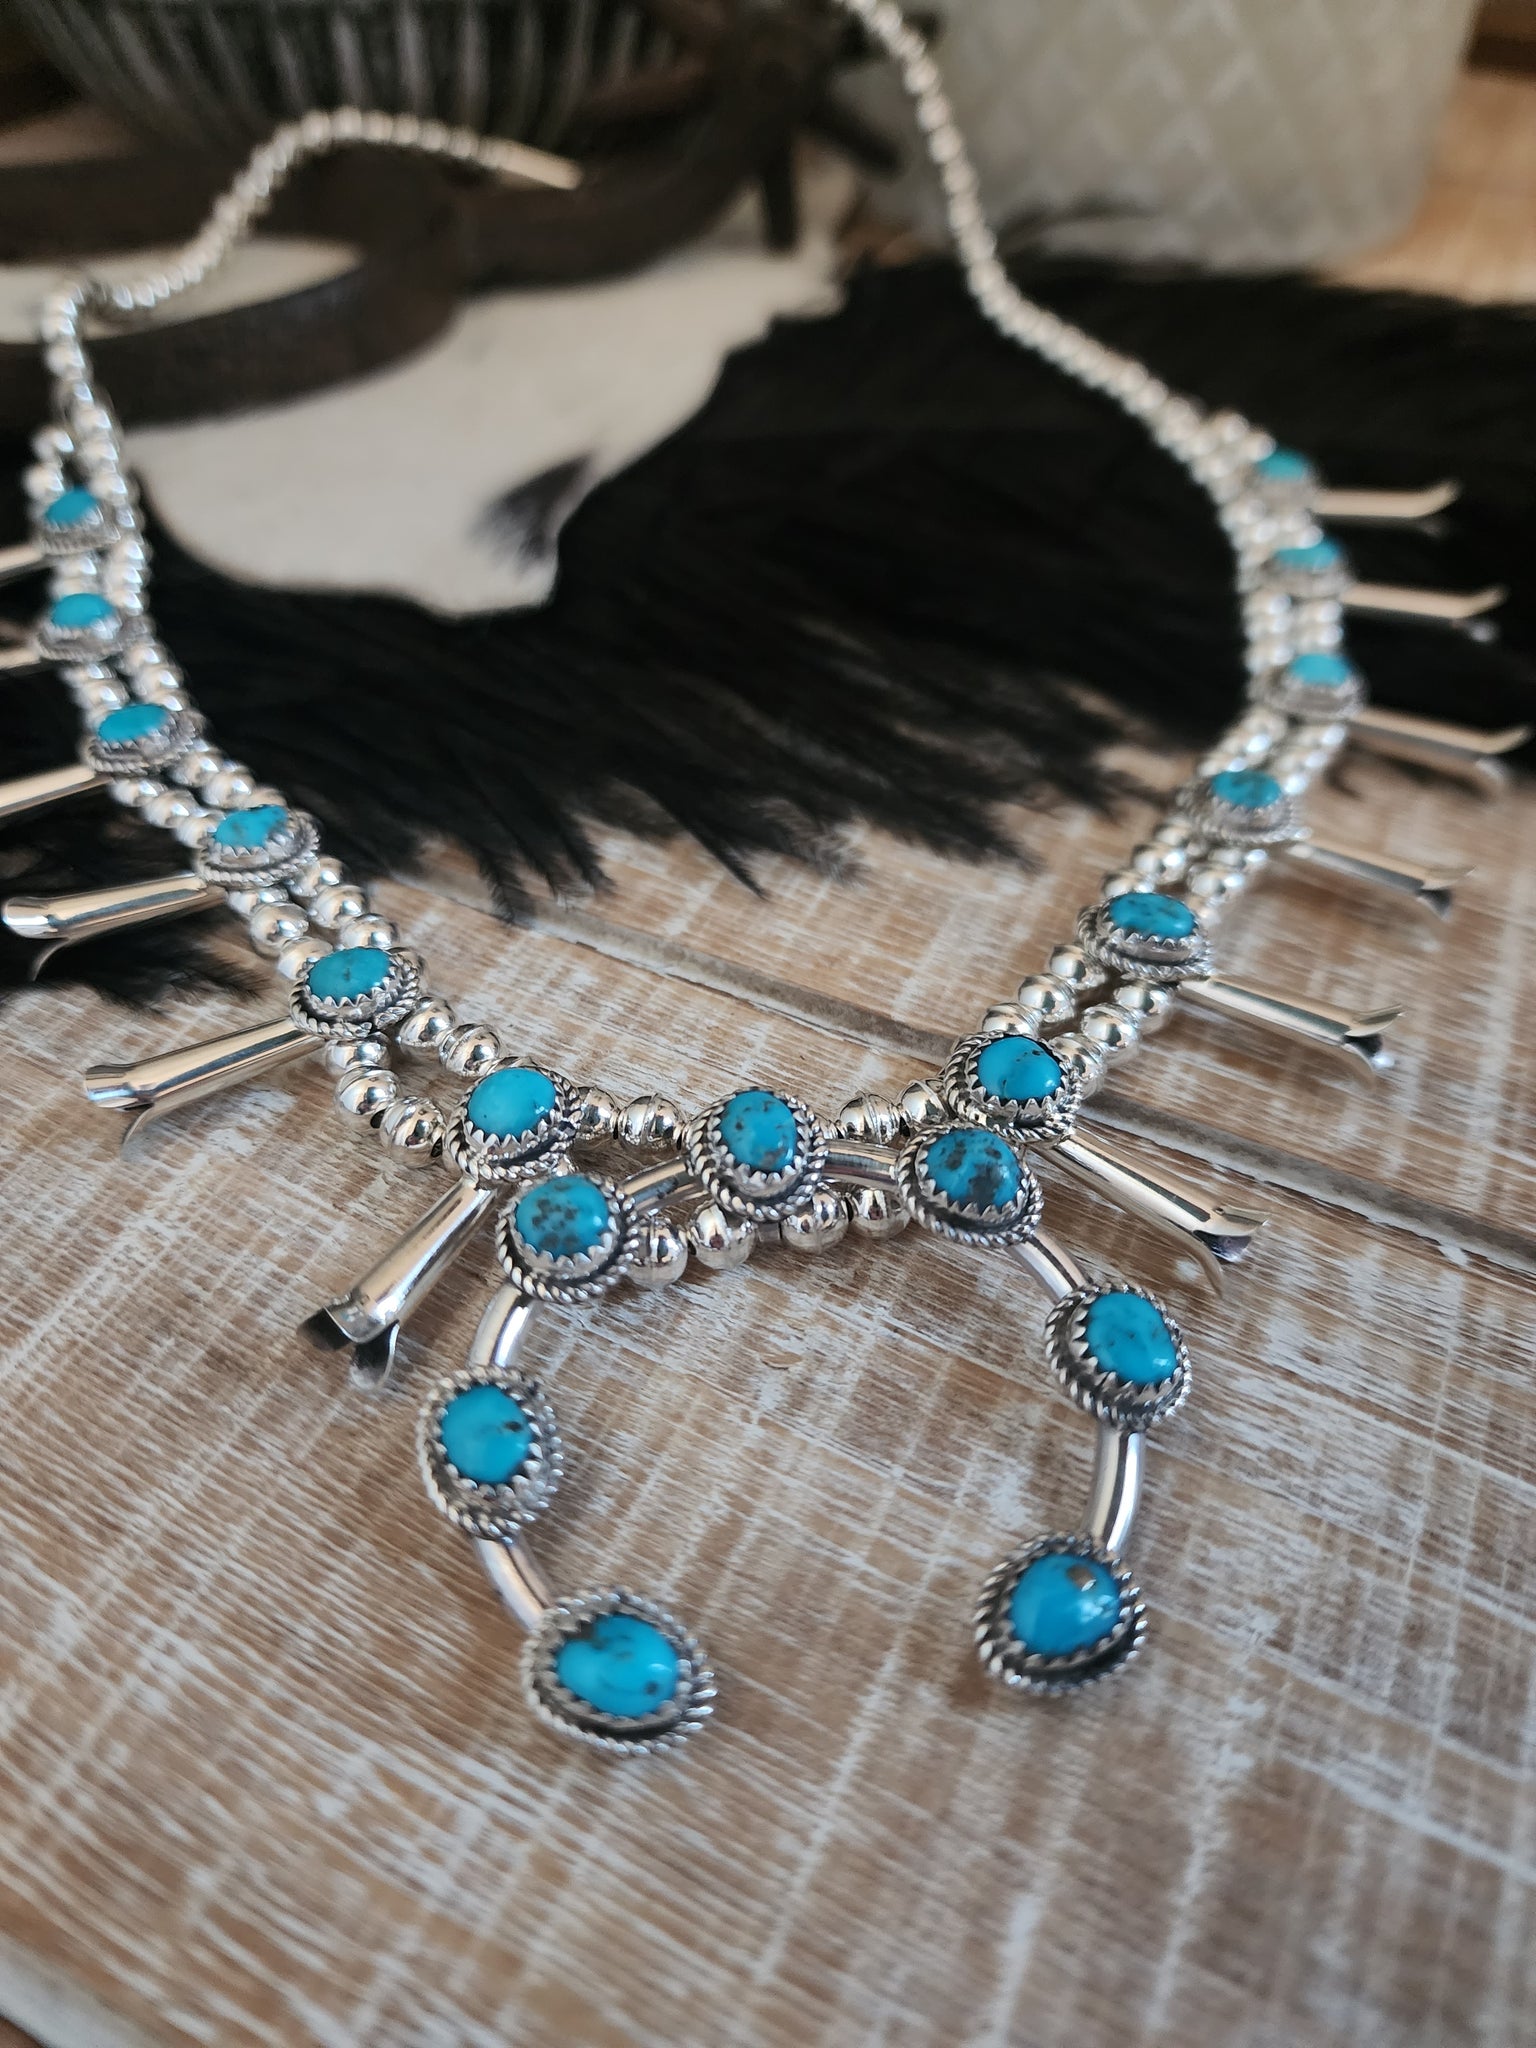 Navajo Turquoise Squash Blossom Necklace 4 Piece Set - NativeIndianMade.com